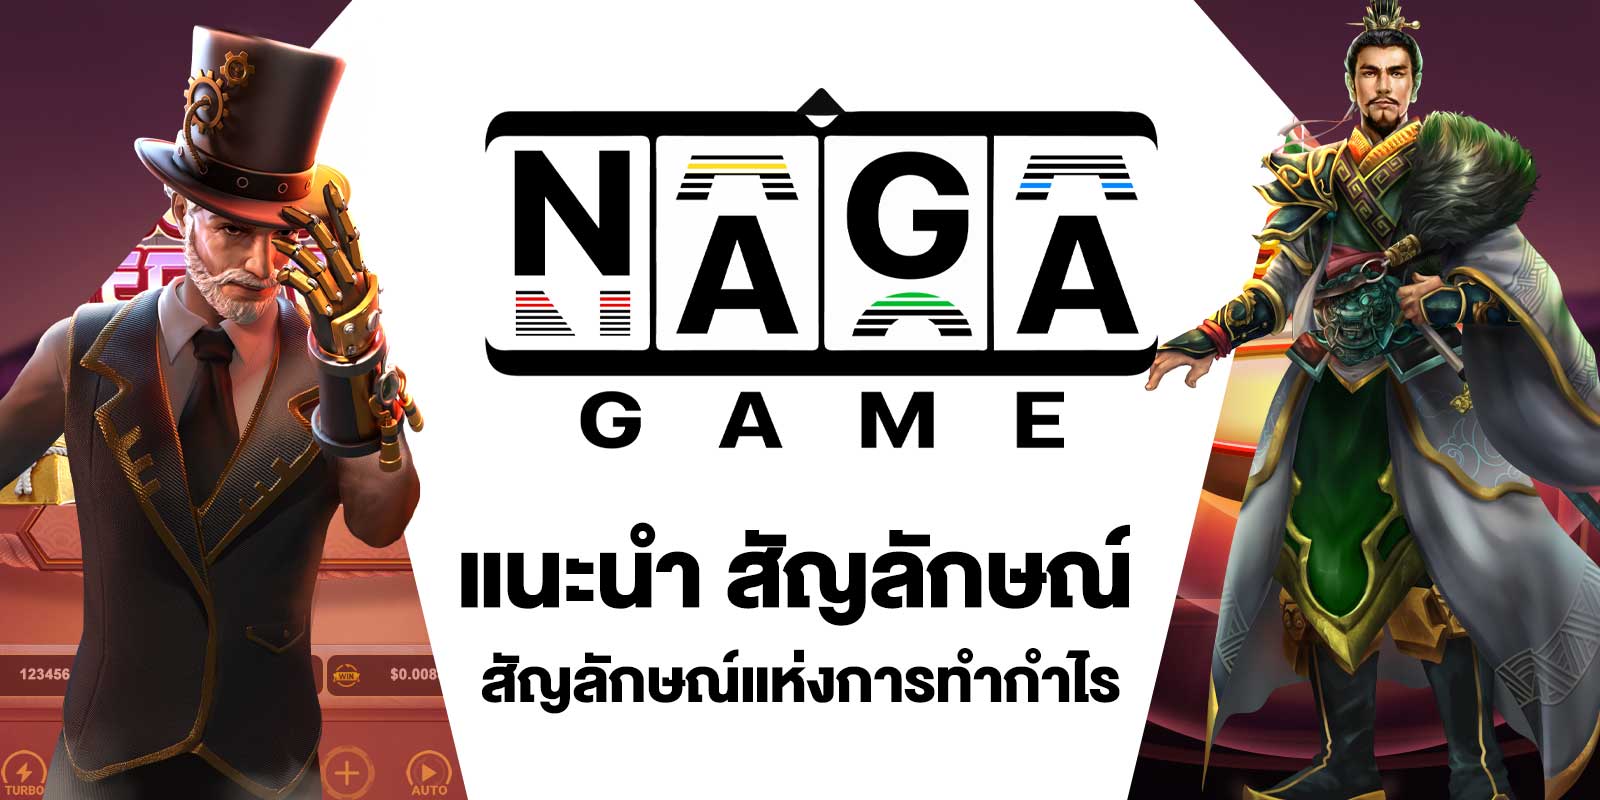 NAGA GAMES